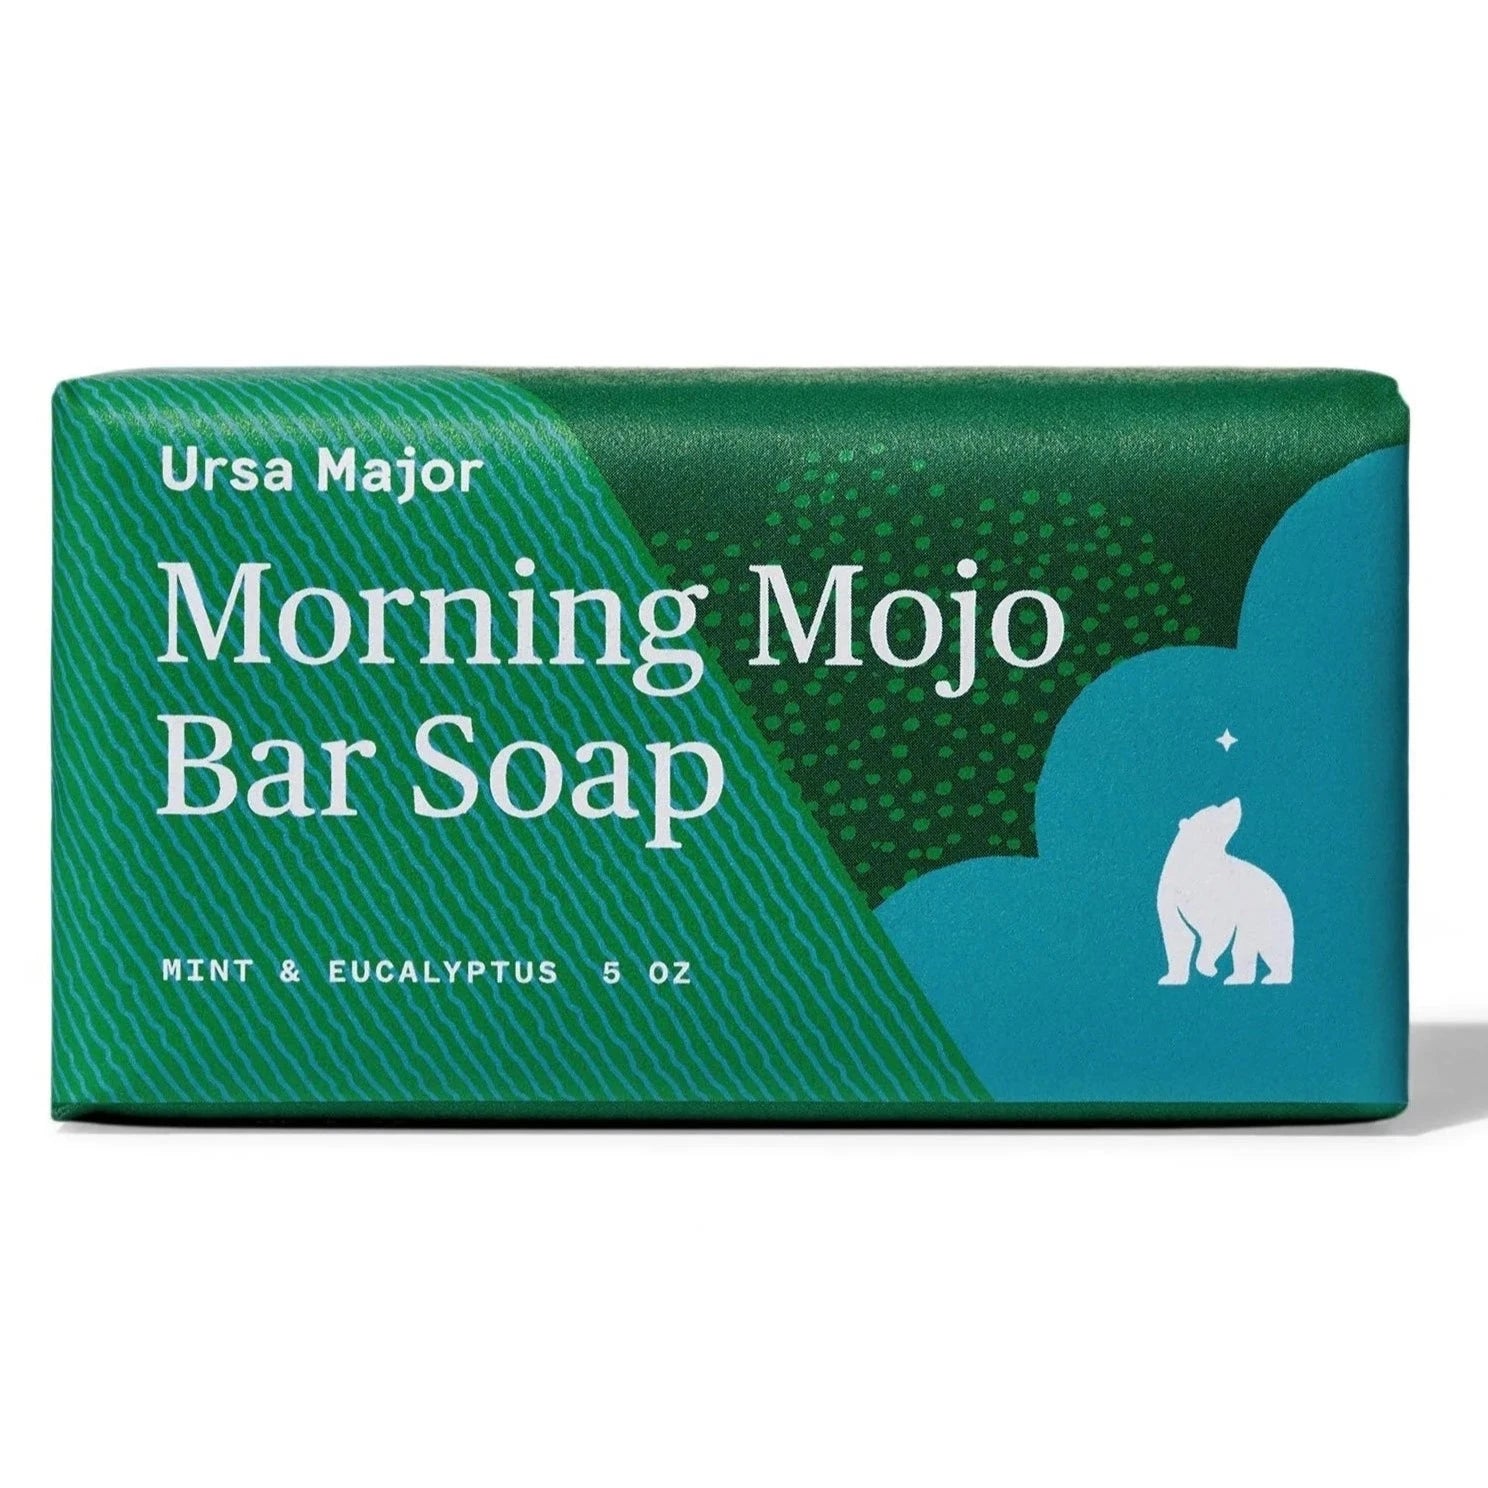 Ursa Major Morning Mojo Bar Soap Dark Green Packaging